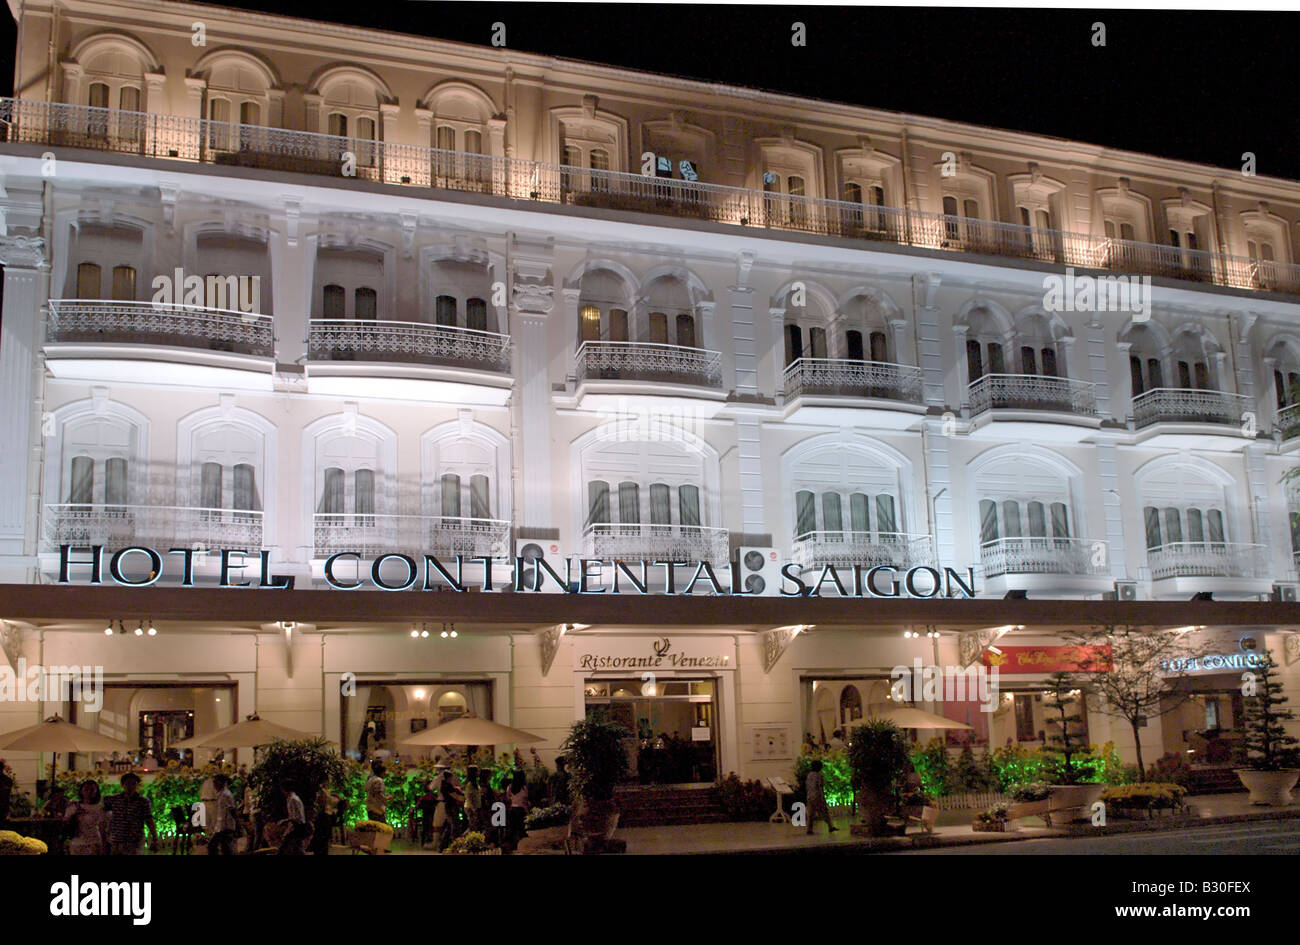 Hotel Continental Saigon au Vietnam Saigon nuit Banque D'Images